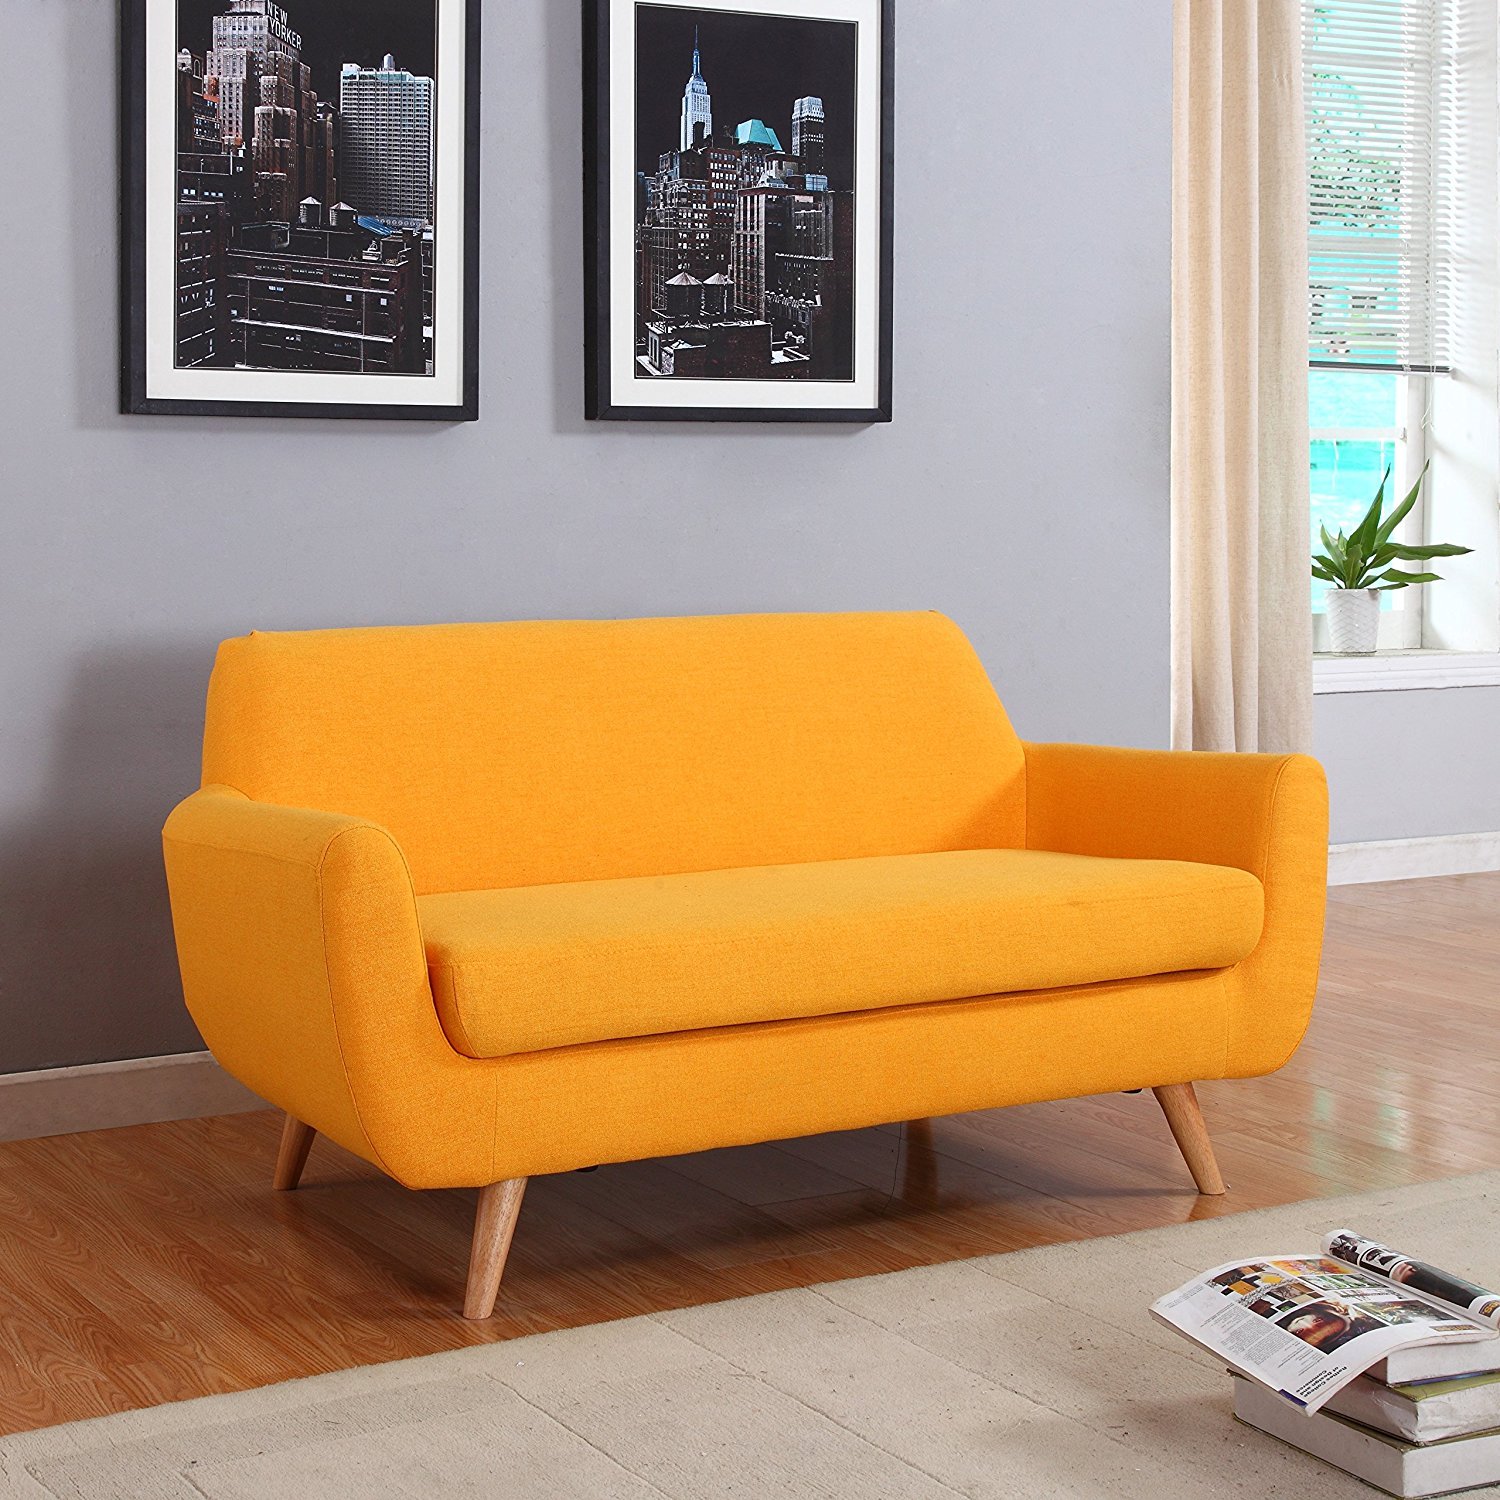 Мебель маленькие диваны. Диван небольшой. Маленький диван. Маленький желтый диван. Оранжевый диван.